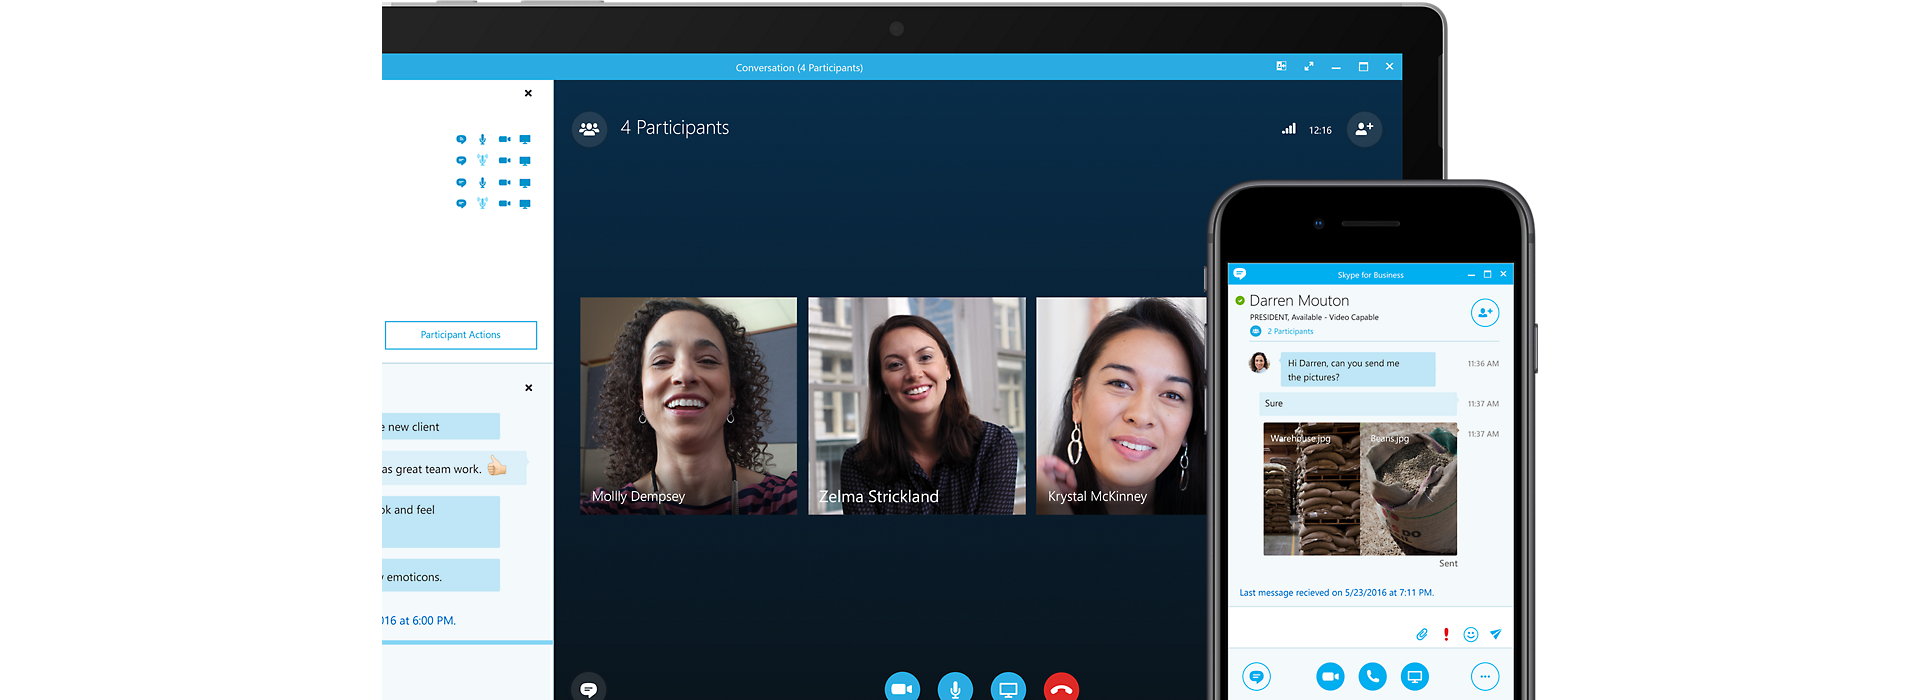 Màn hình thiết bị hiển thị cuộc họp trực tuyến trên Skype for Business bị che bởi màn hình thiết bị di động được kết nối với cuộc họp đó